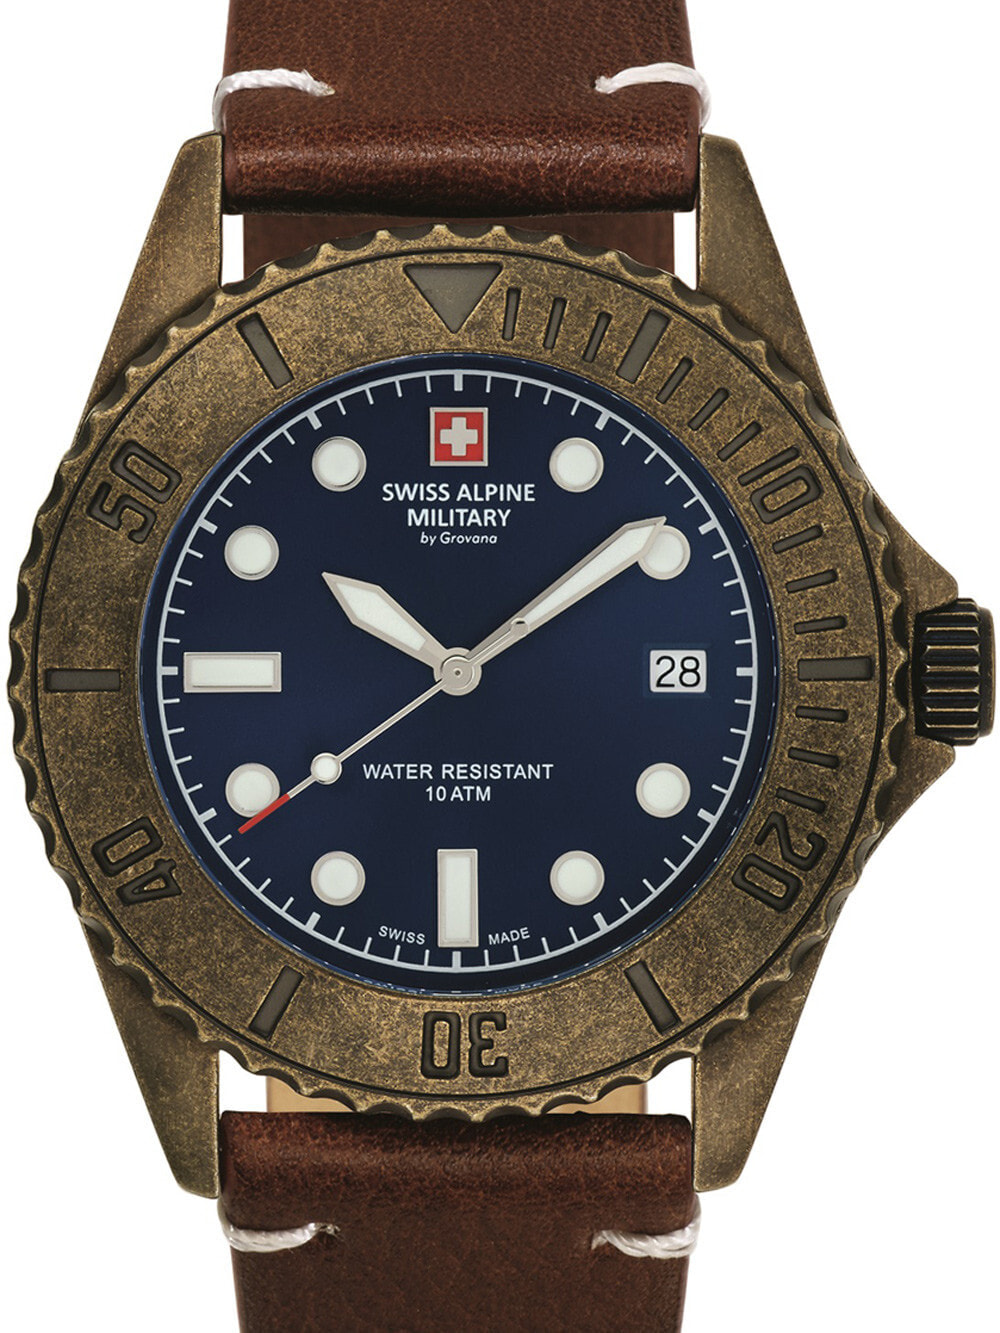 Мужские наручные часы с коричневым кожаным ремешком Swiss Alpine Military 7051.1585 diver vintage 41mm 10ATM